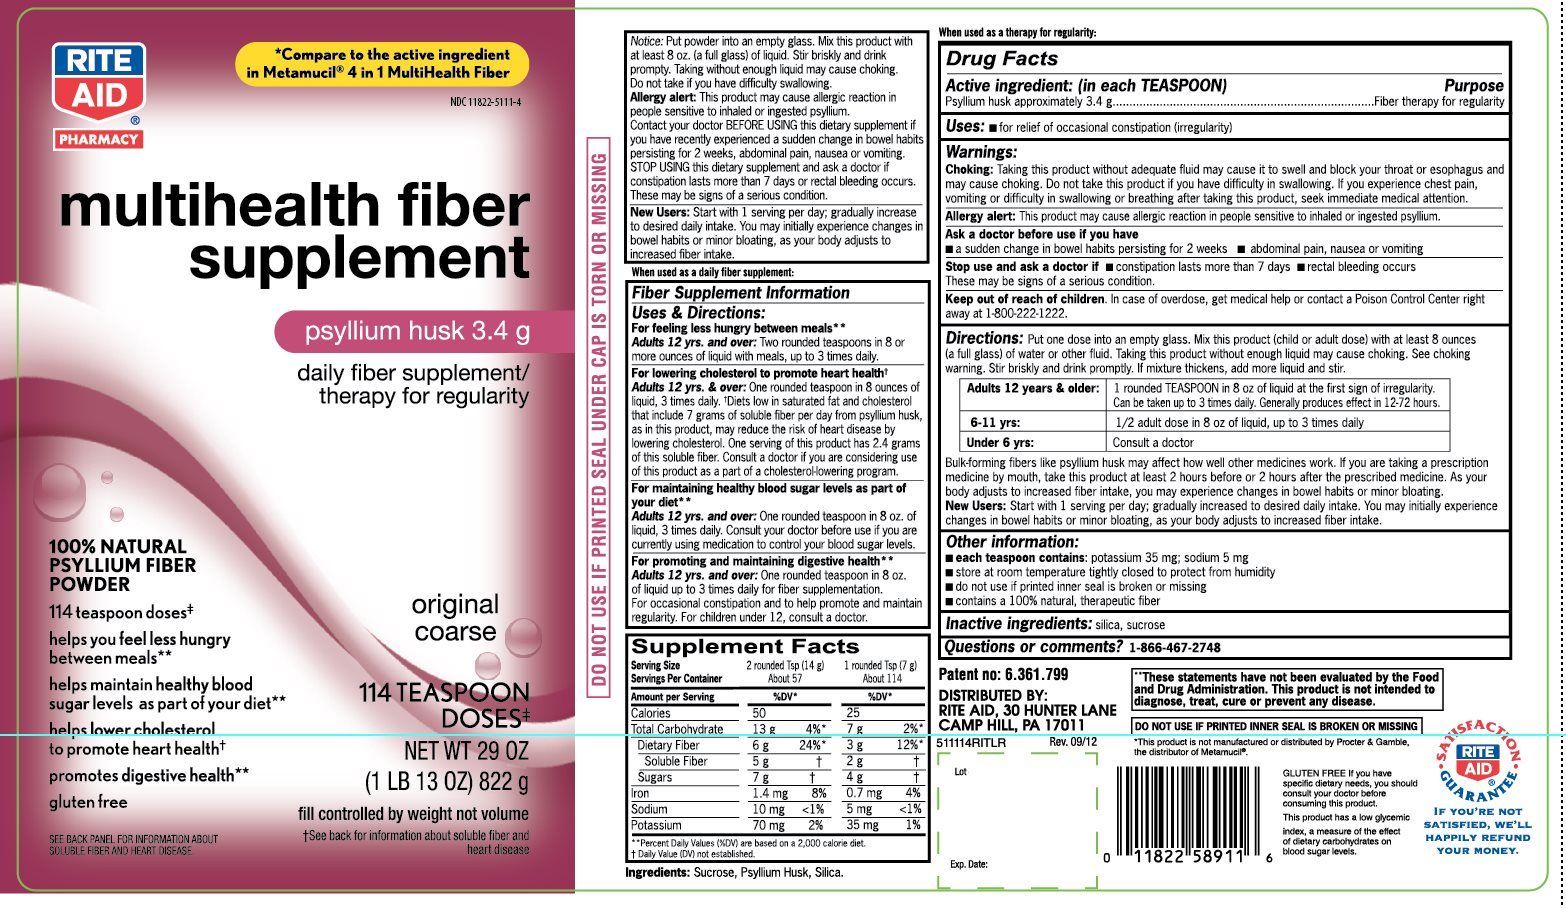 Rite Aid multihealth fiber supplement 114 teaspoon doses